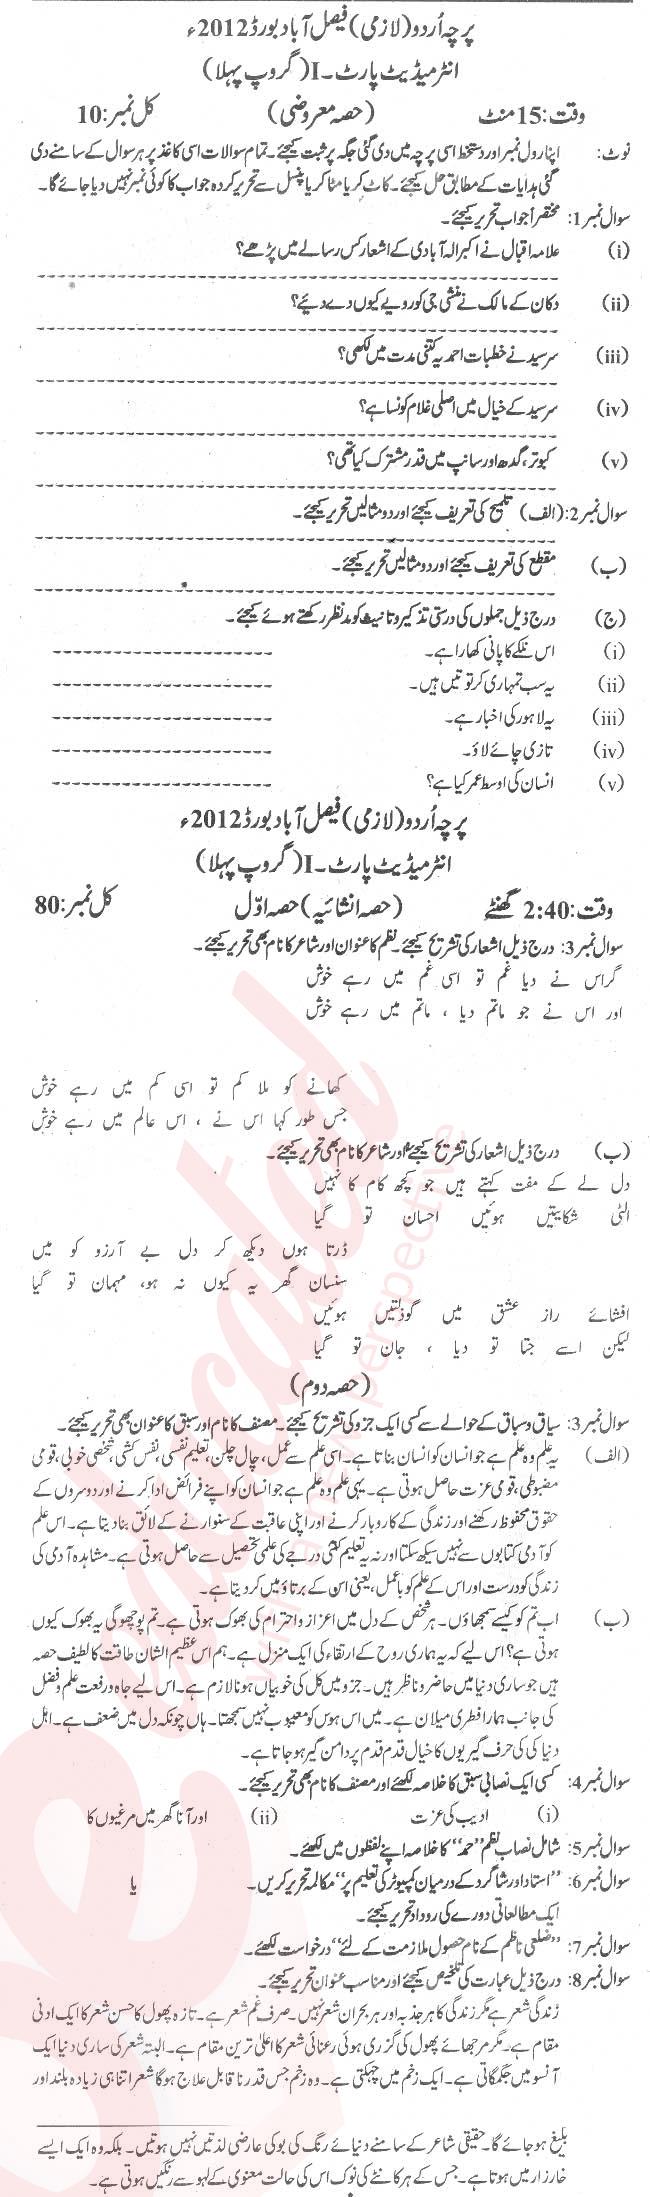 Urdu 11th class Past Paper Group 1 BISE Faisalabad 2012